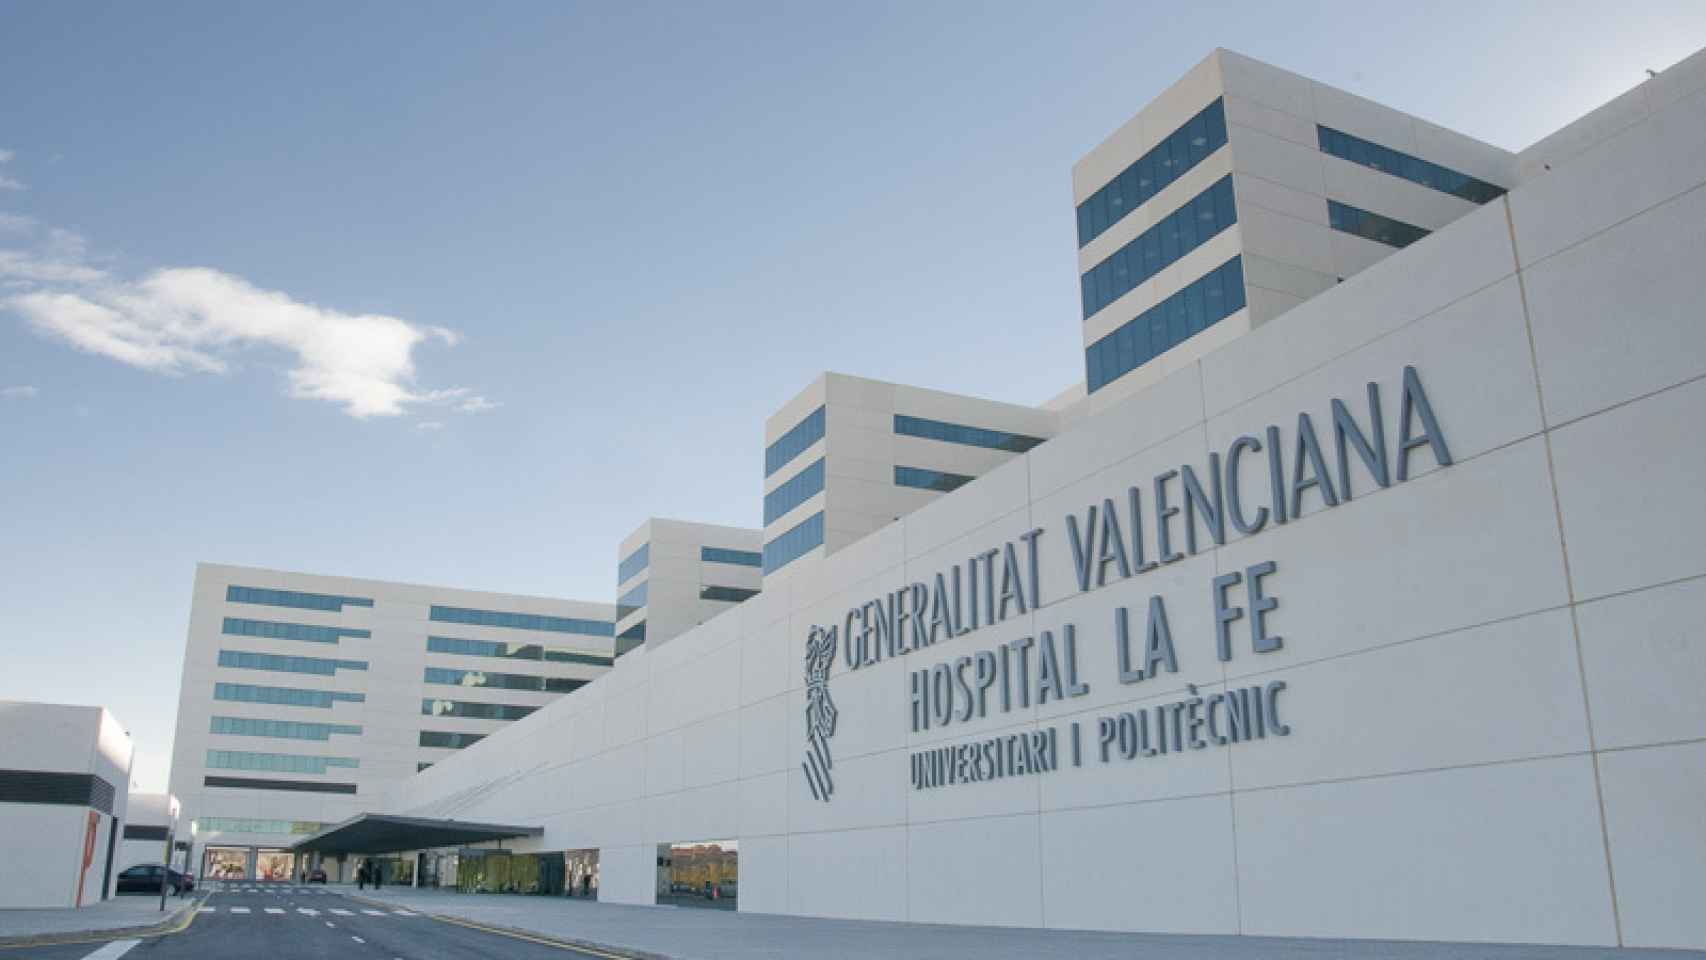 Hospital La Fe Valencia.